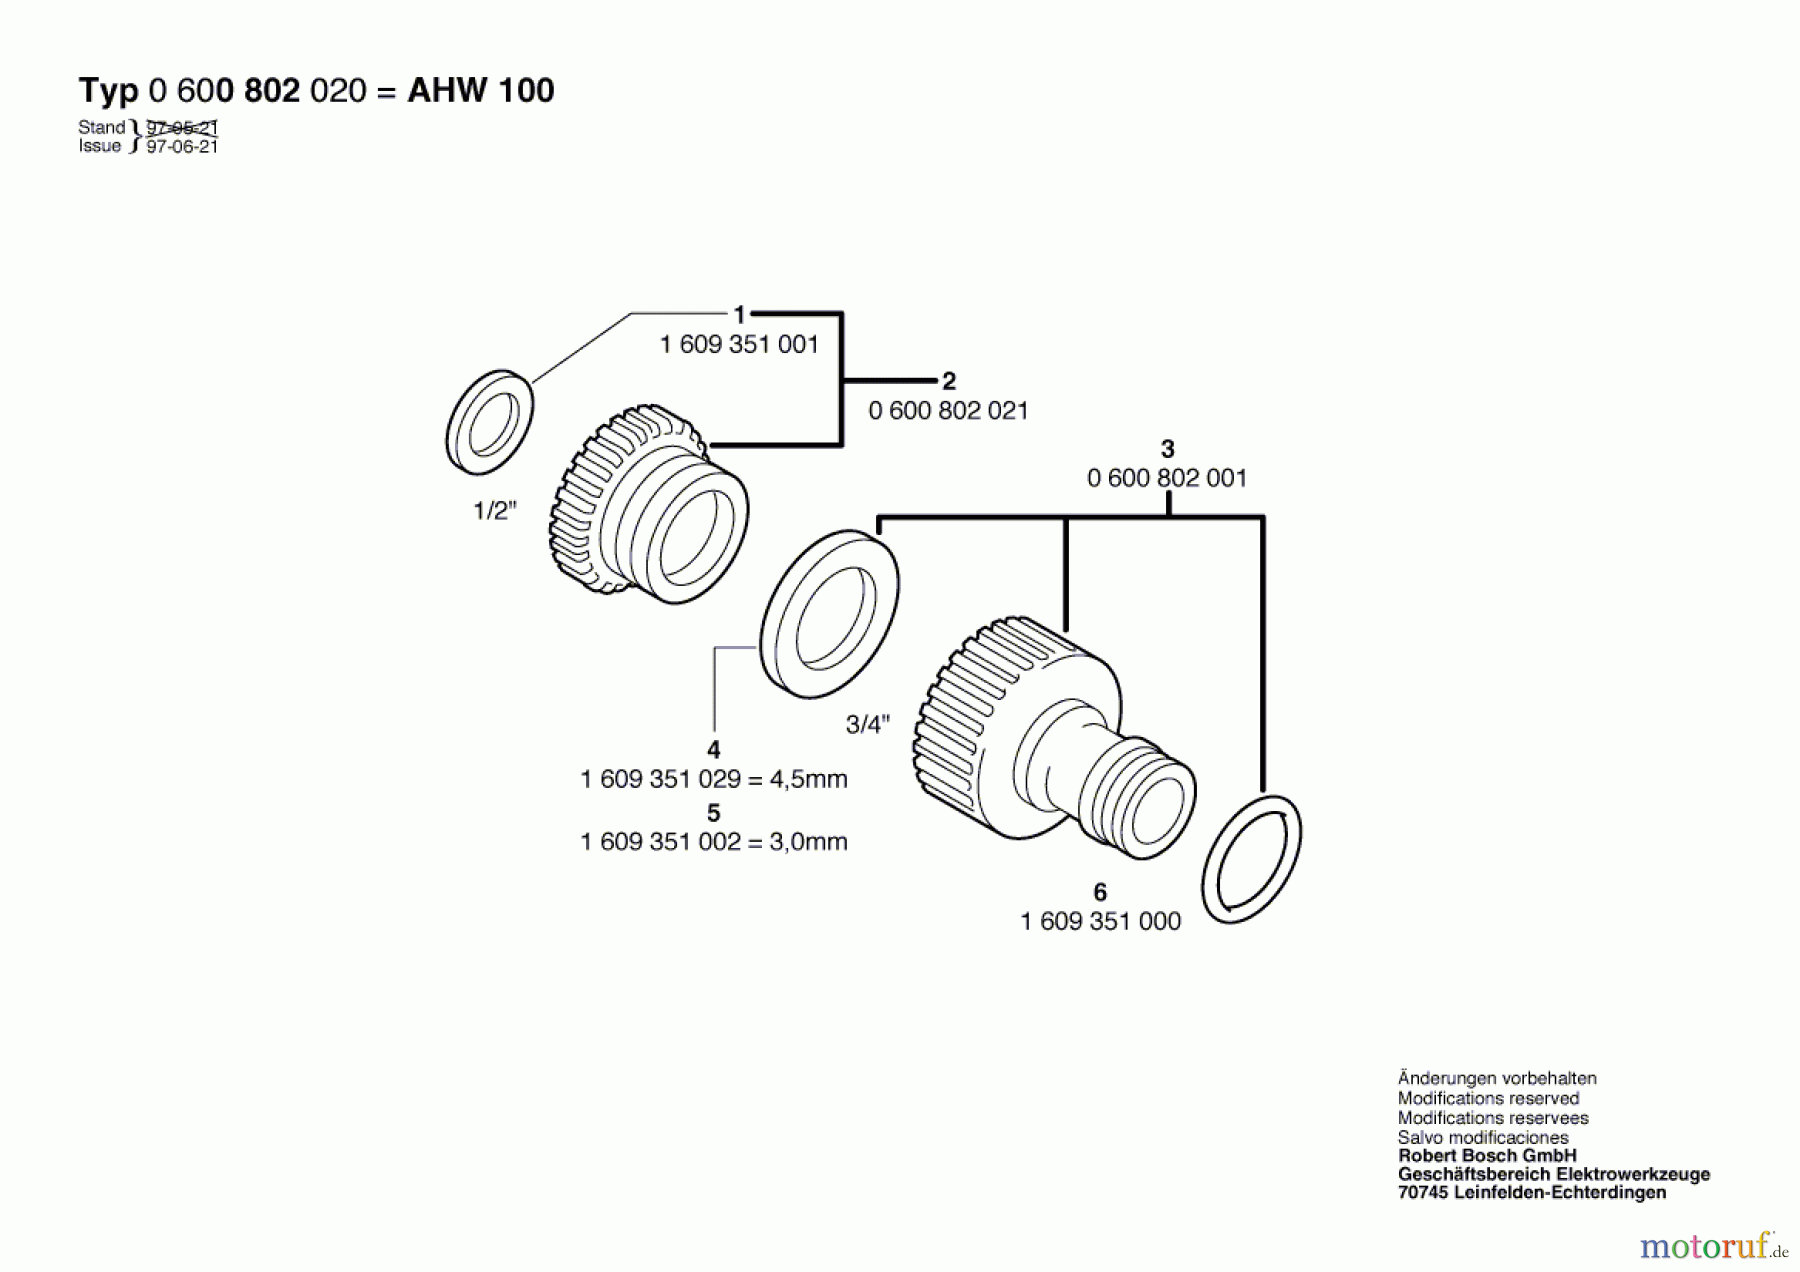  Bosch Wassertechnik Hahnanschlussstück AHW 100 Seite 1